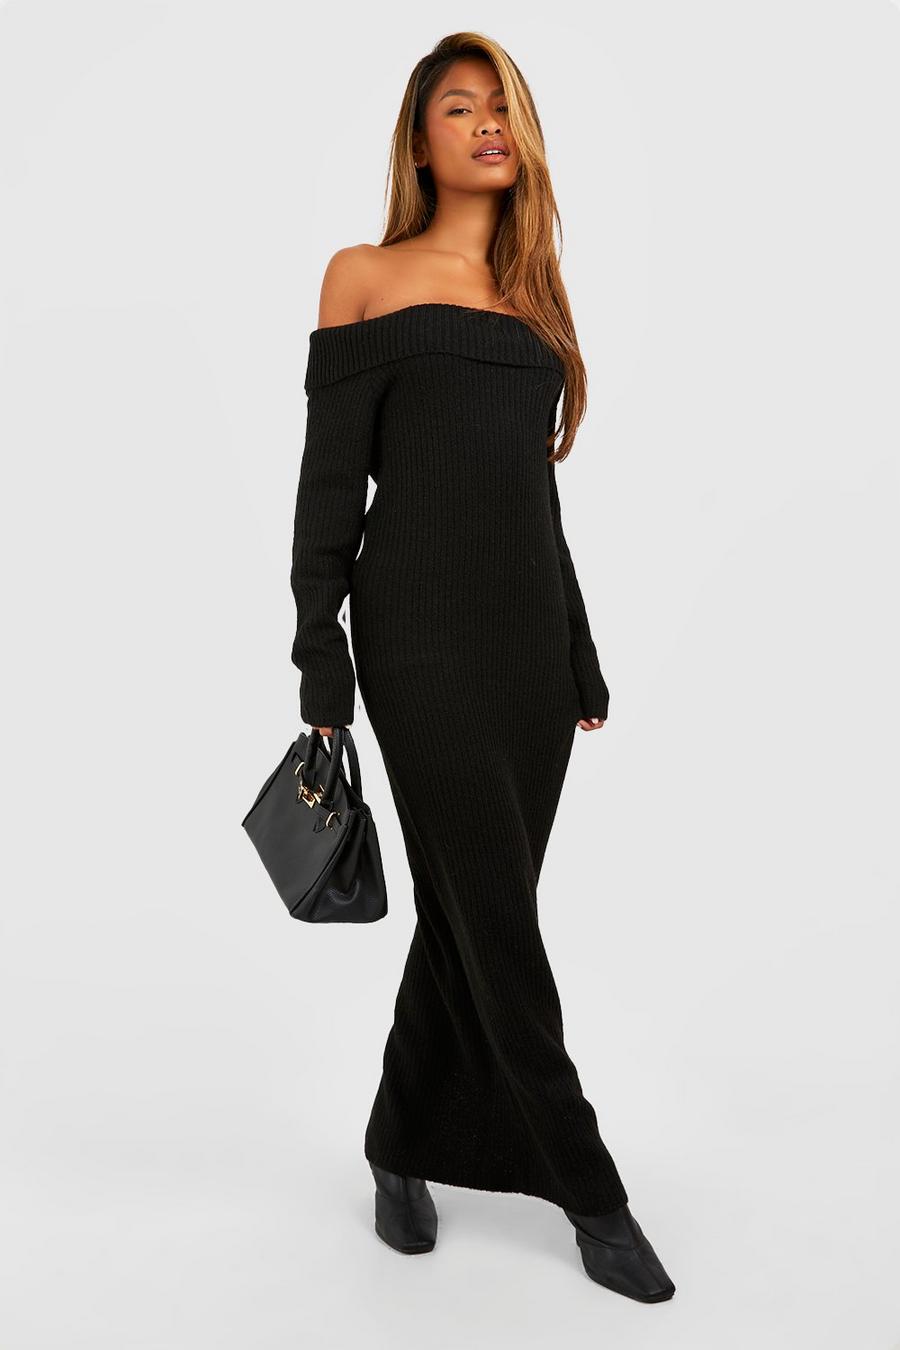 Black Soft Knit Off The Shoulder Maxi Jupmer Dress image number 1